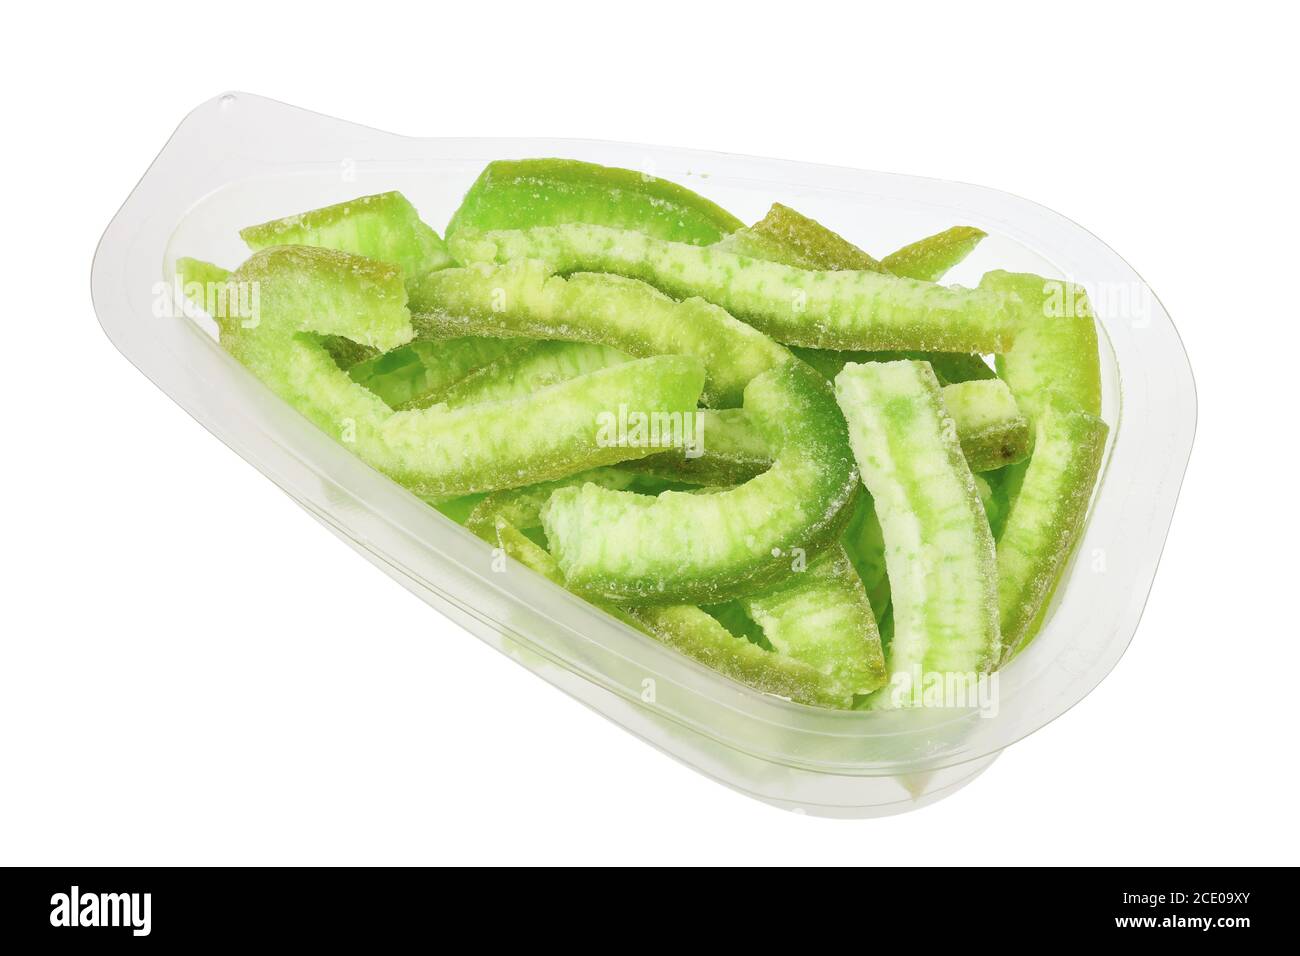 Producto alimenticio diario - pomelo verde dulce confitado con azúcar en un recipiente de plástico transparente aislado macro Foto de stock